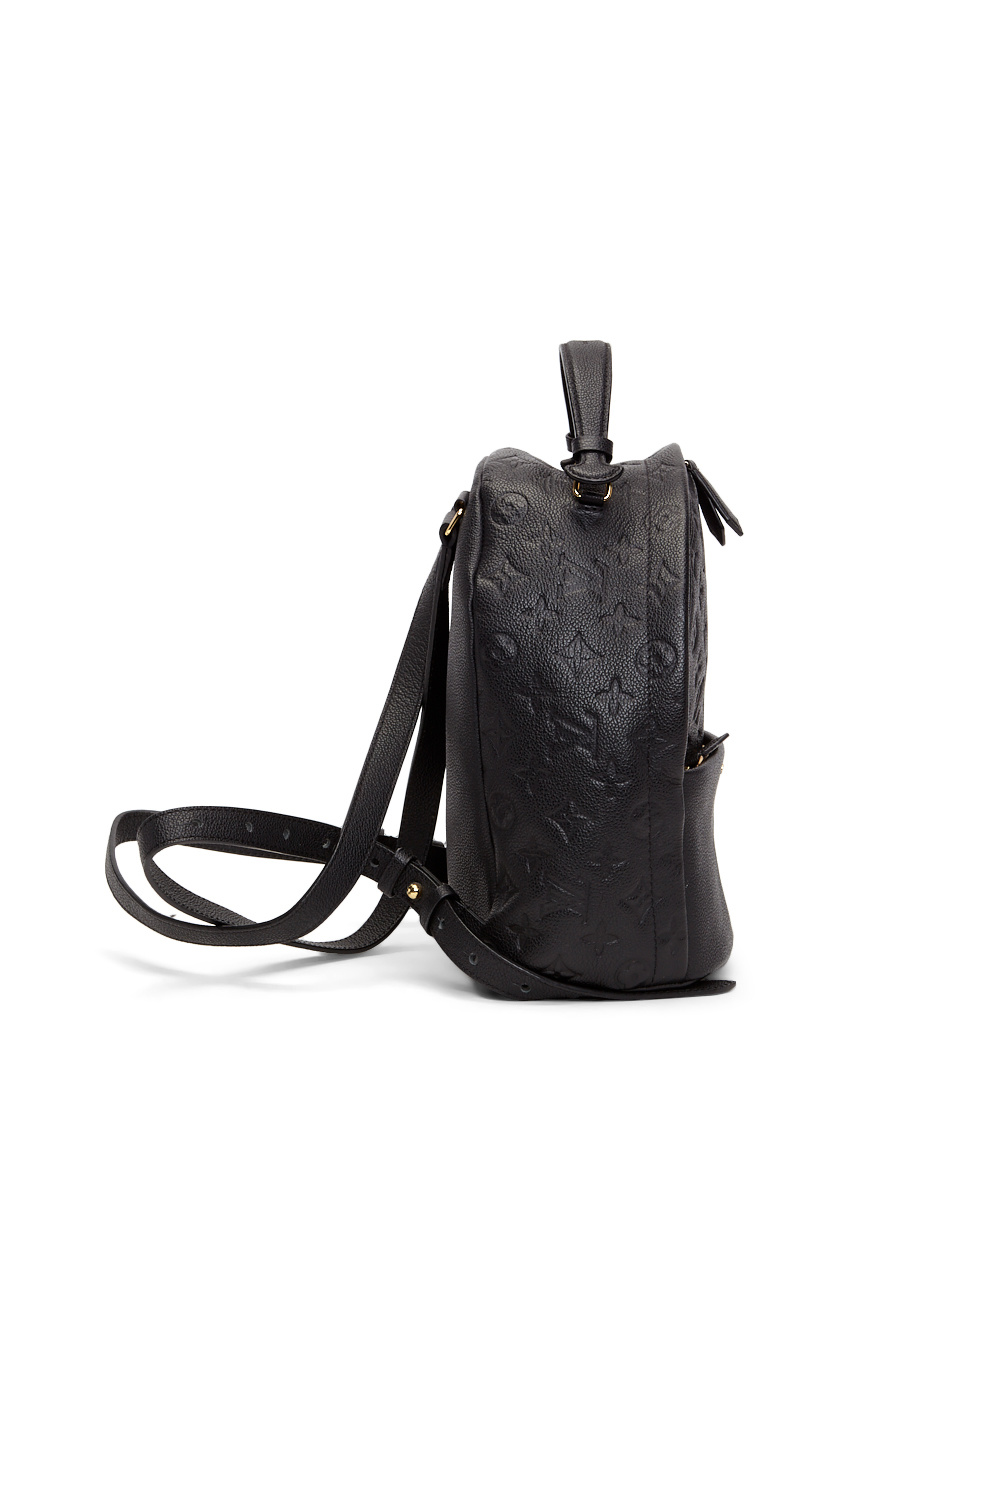 Louis Vuitton Black Monogram Empreinte Sorbonne Backpack - RETYCHE